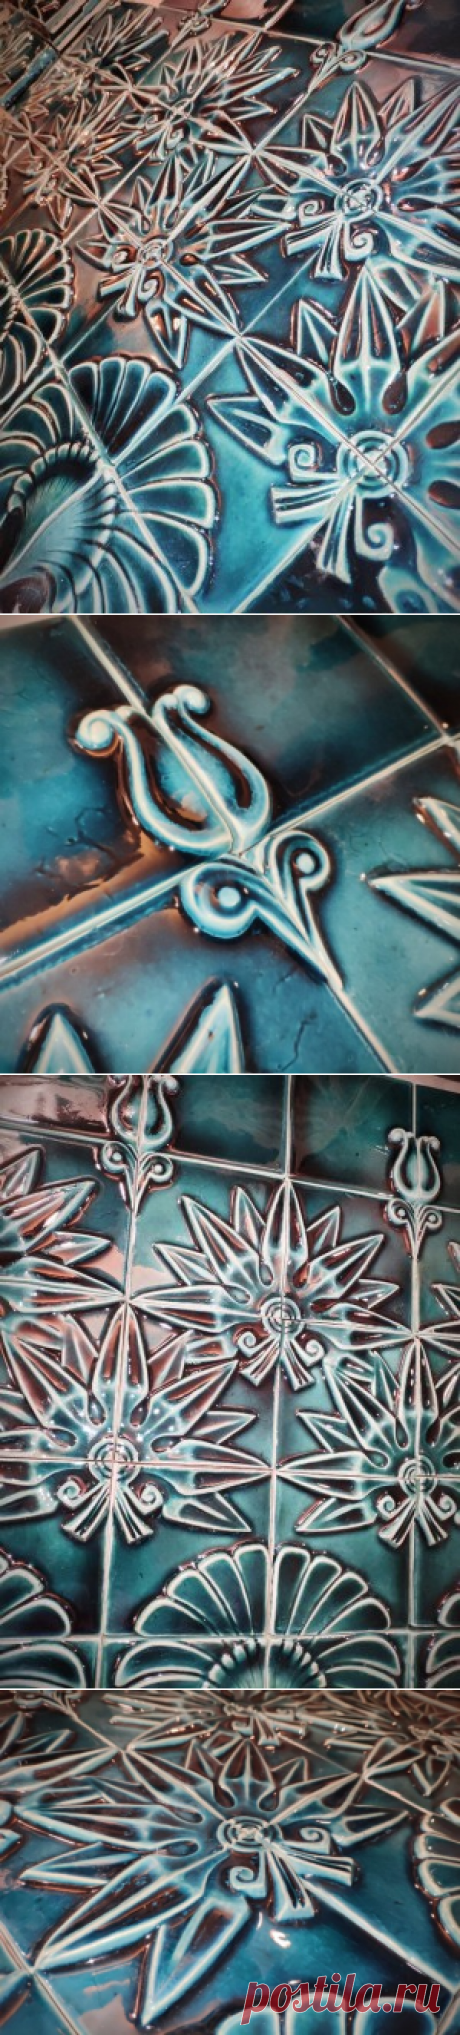 Рельефные изразцы для камина или печи со стилизованными астрами